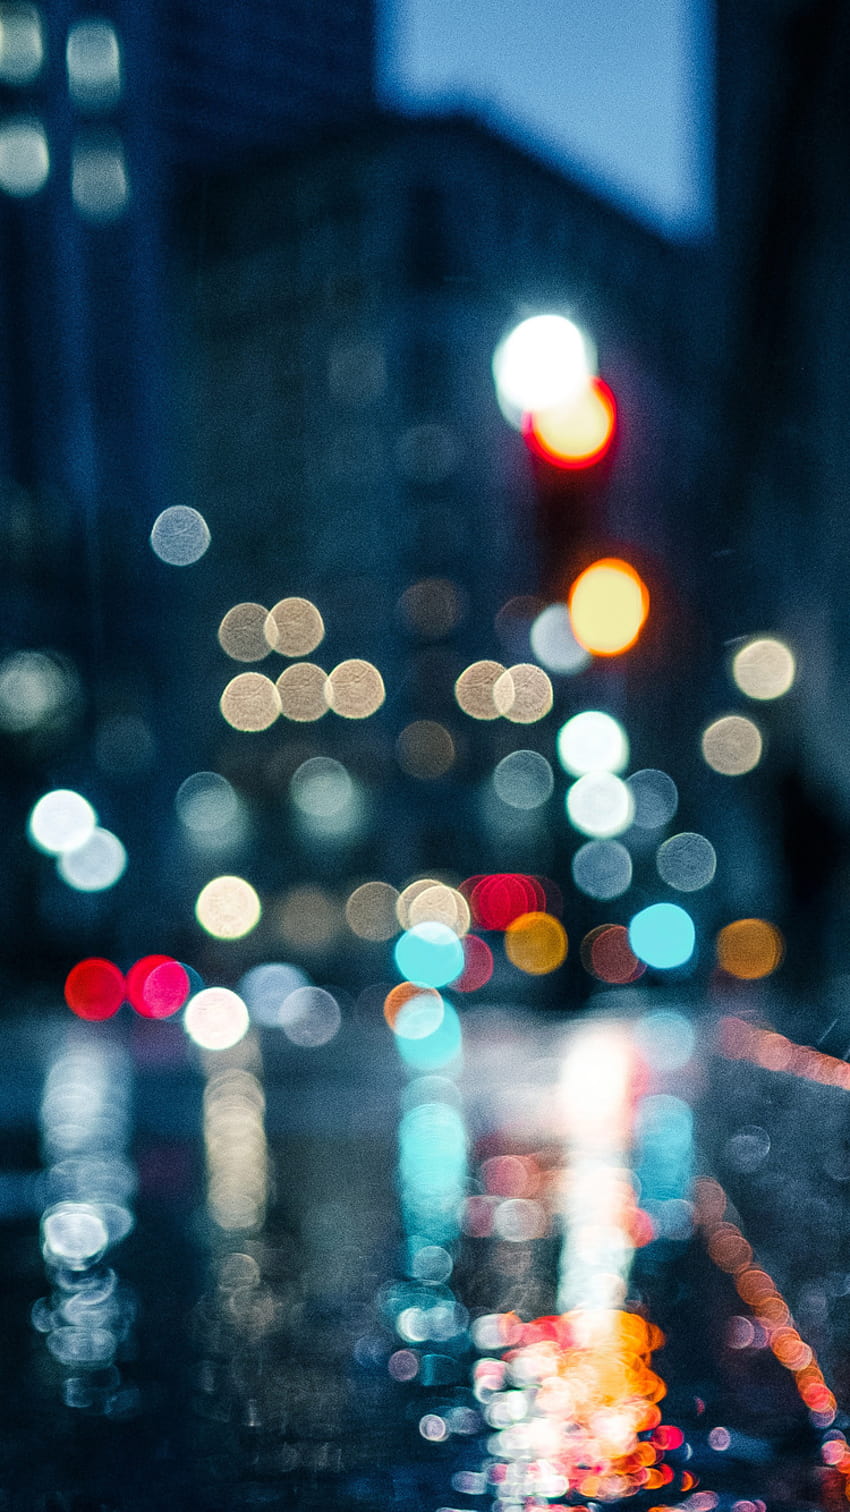 Mưa thành phố: Cảm nhận được không khí mát mẻ khi chiếc mưa hạnh phúc rơi xuống thành phố đang sống động. Bức tranh ảnh sẽ giúp bạn thấy được vẻ đẹp và sự tĩnh lặng sau cơn mưa thông qua ánh đèn đường lập lánh.